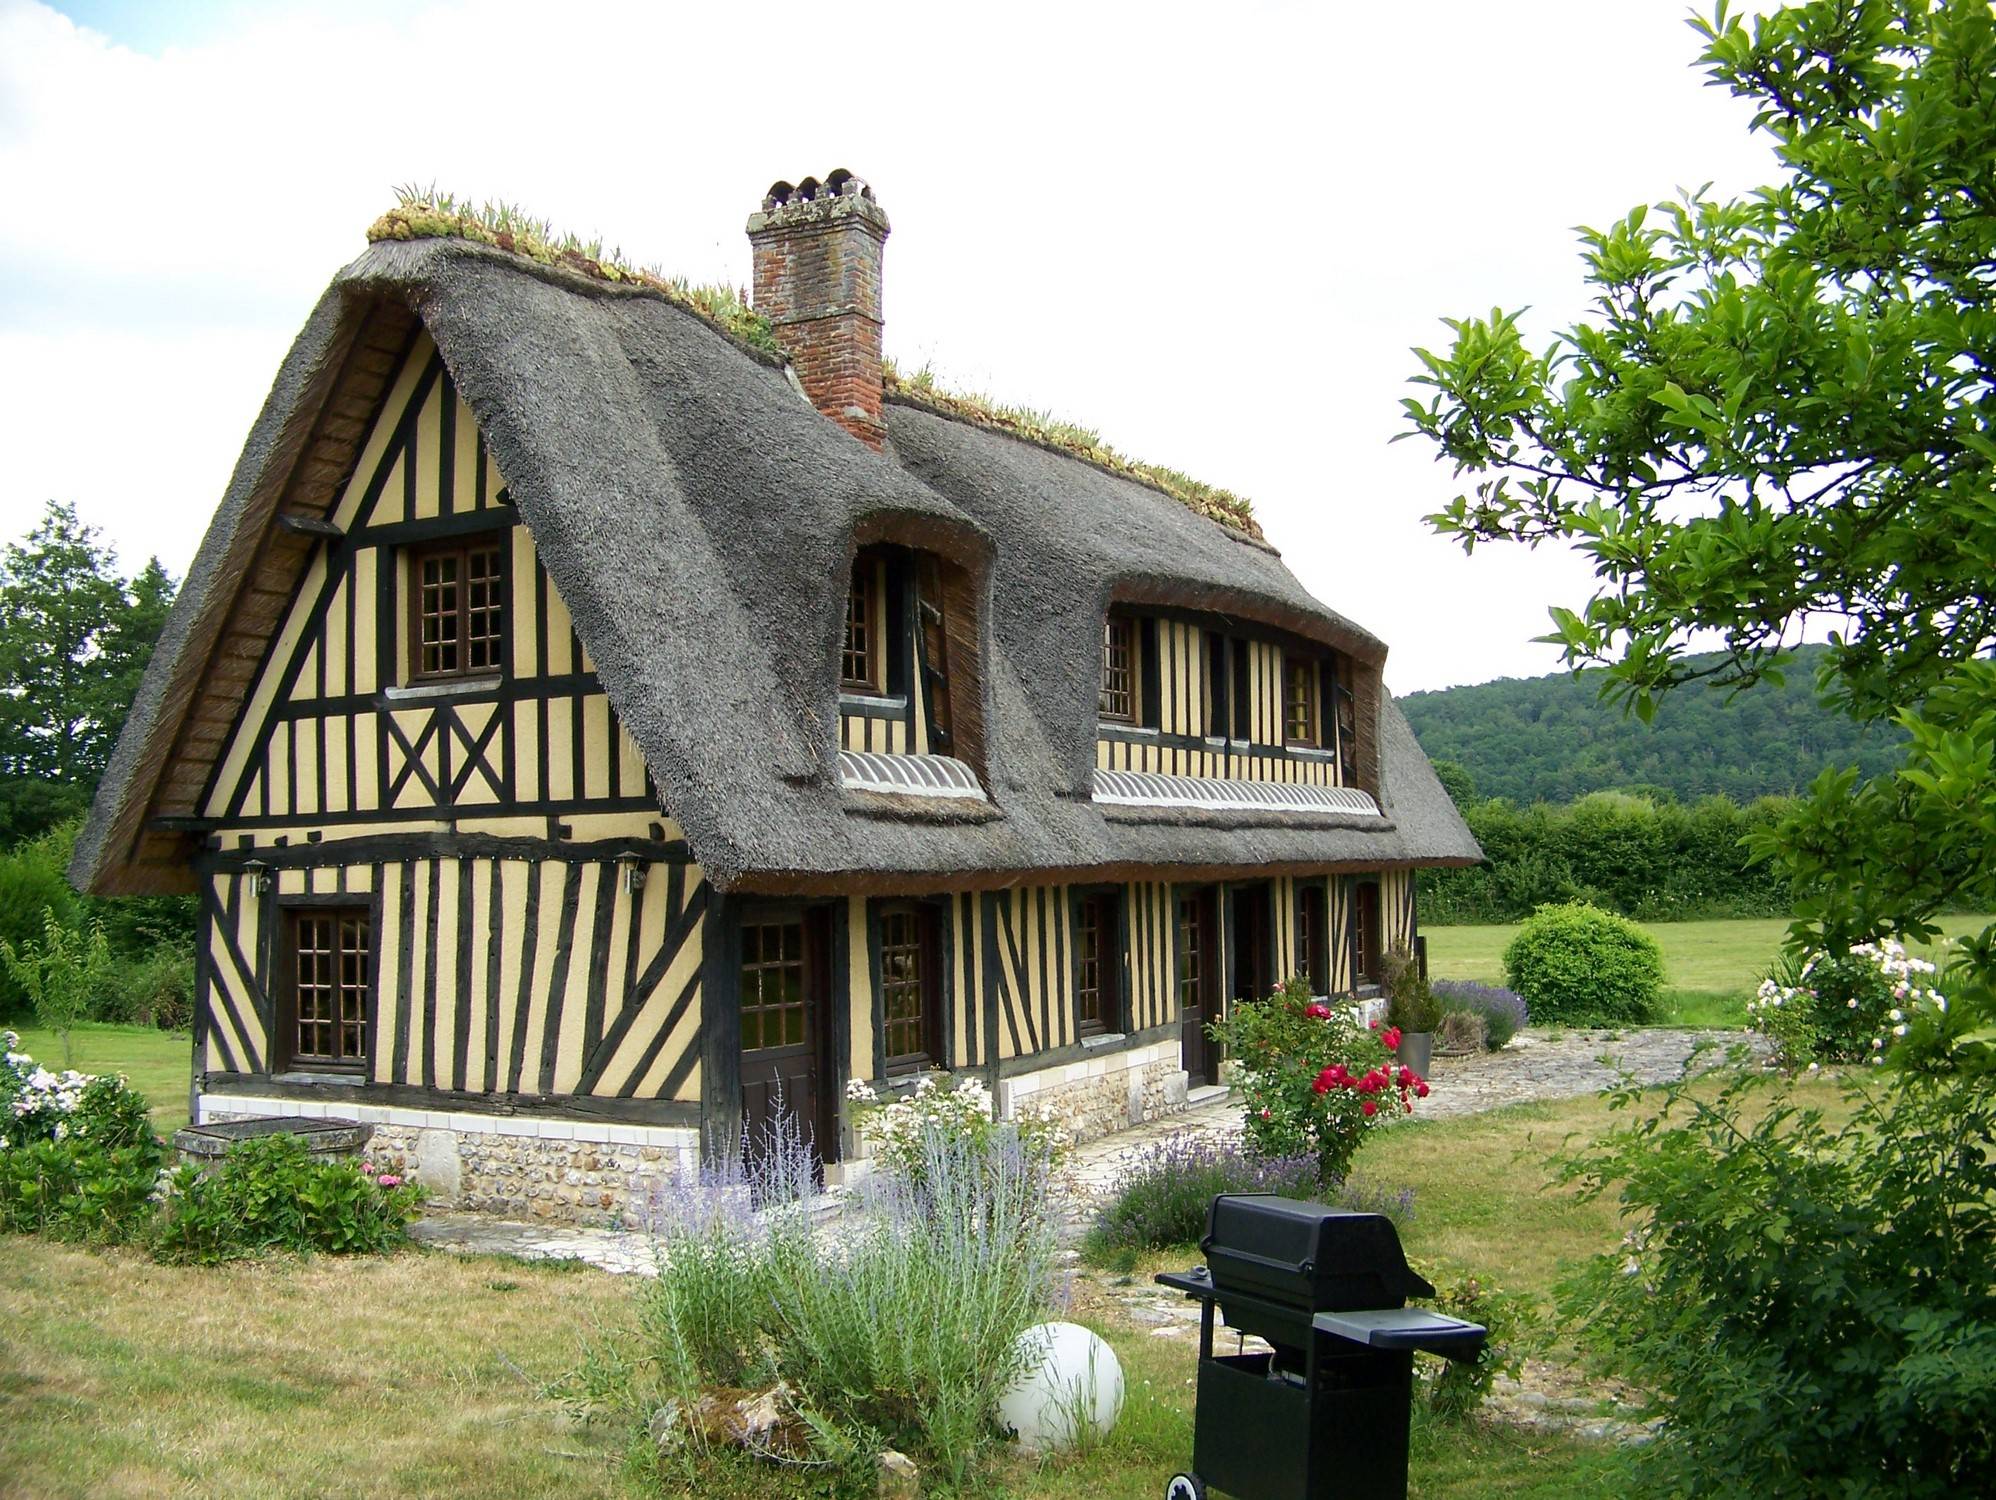  A vendre authentique maison normande et sa dépendance en Normandie 14